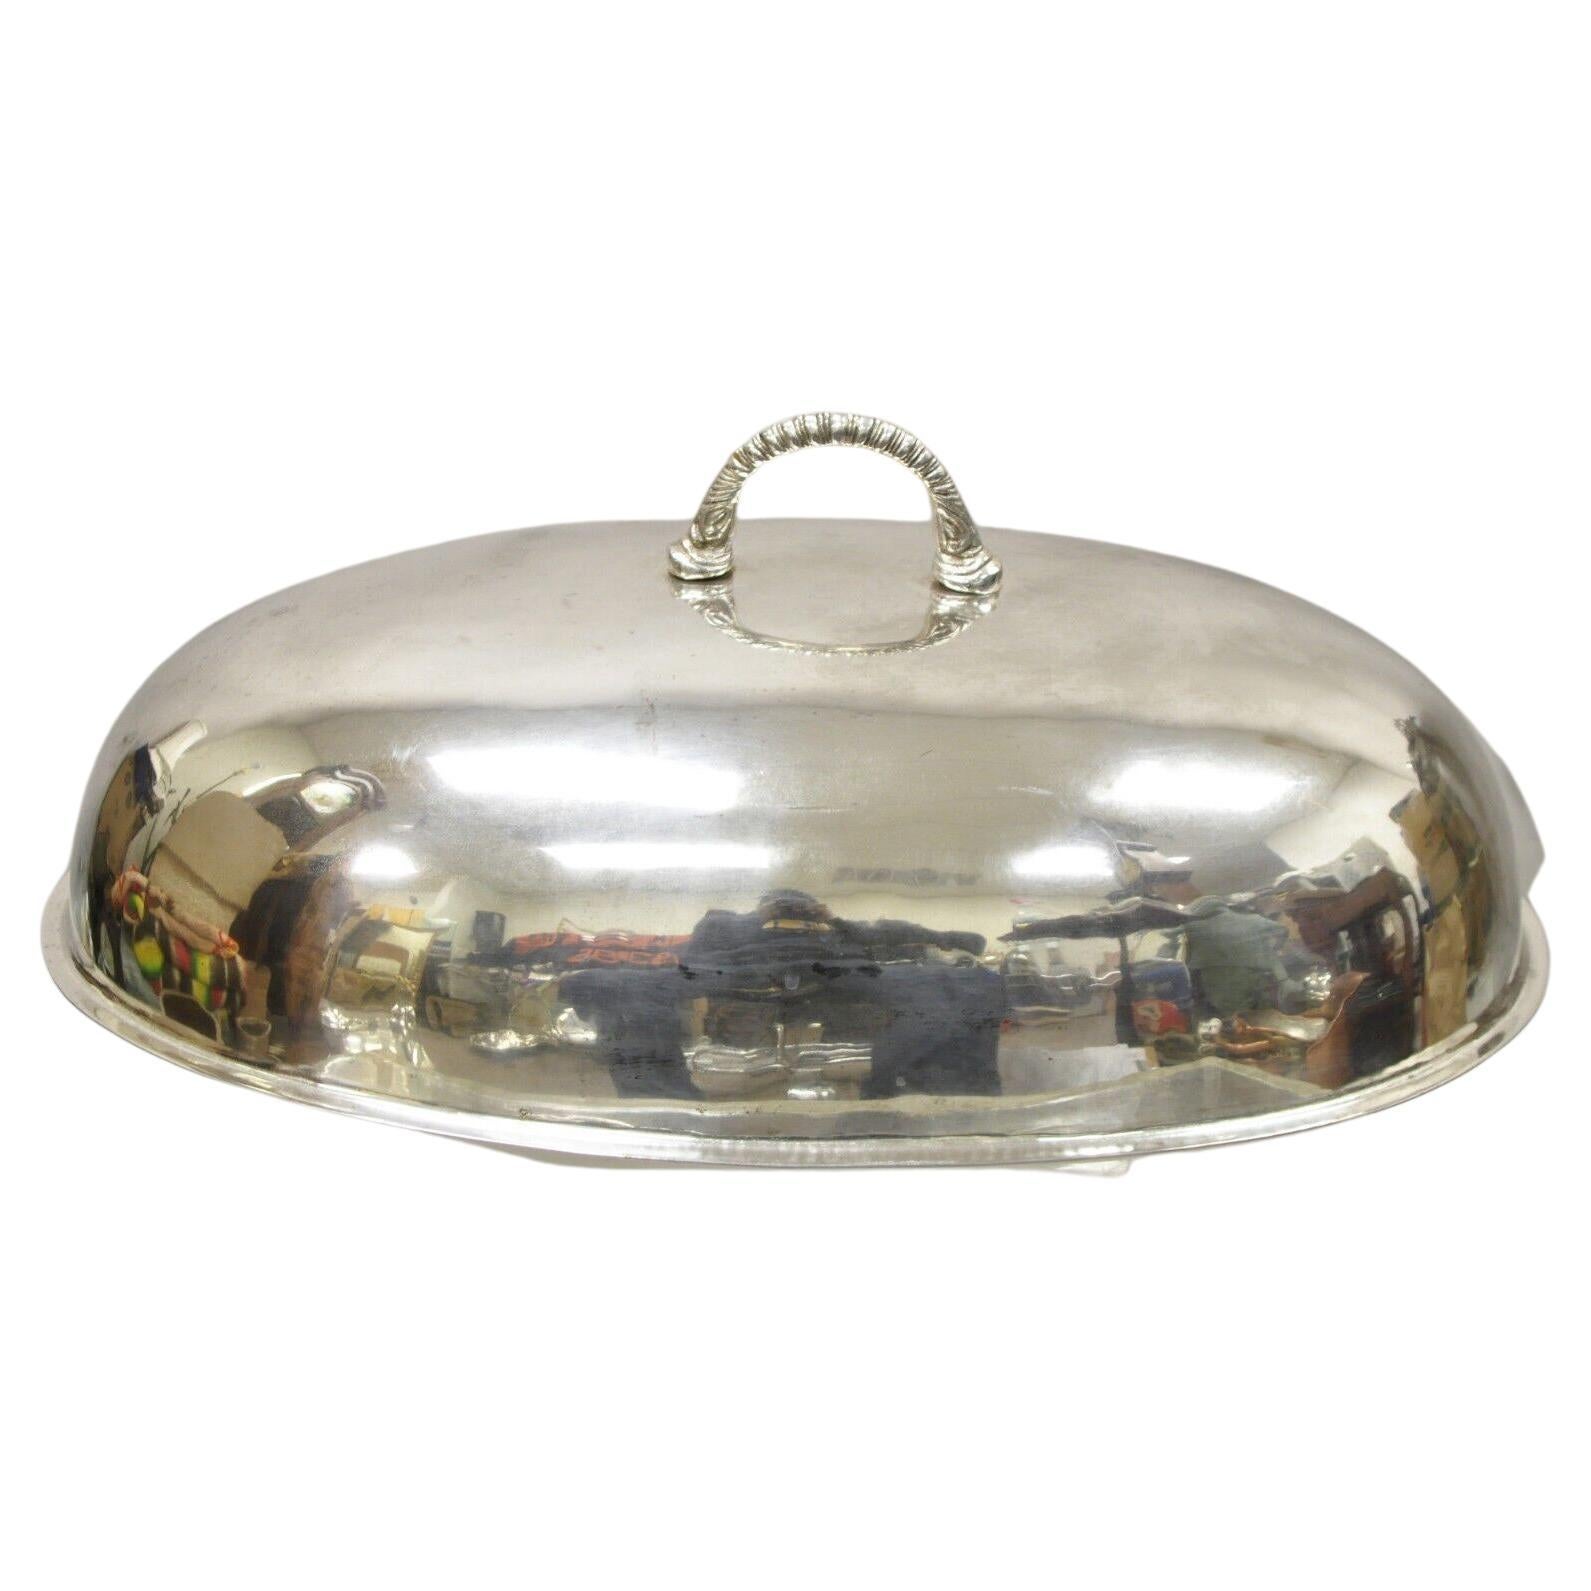 Large Vintage Oval Modern Silver Plated Food Serving Dish Dome Cover (plat de service ovale en métal argenté)